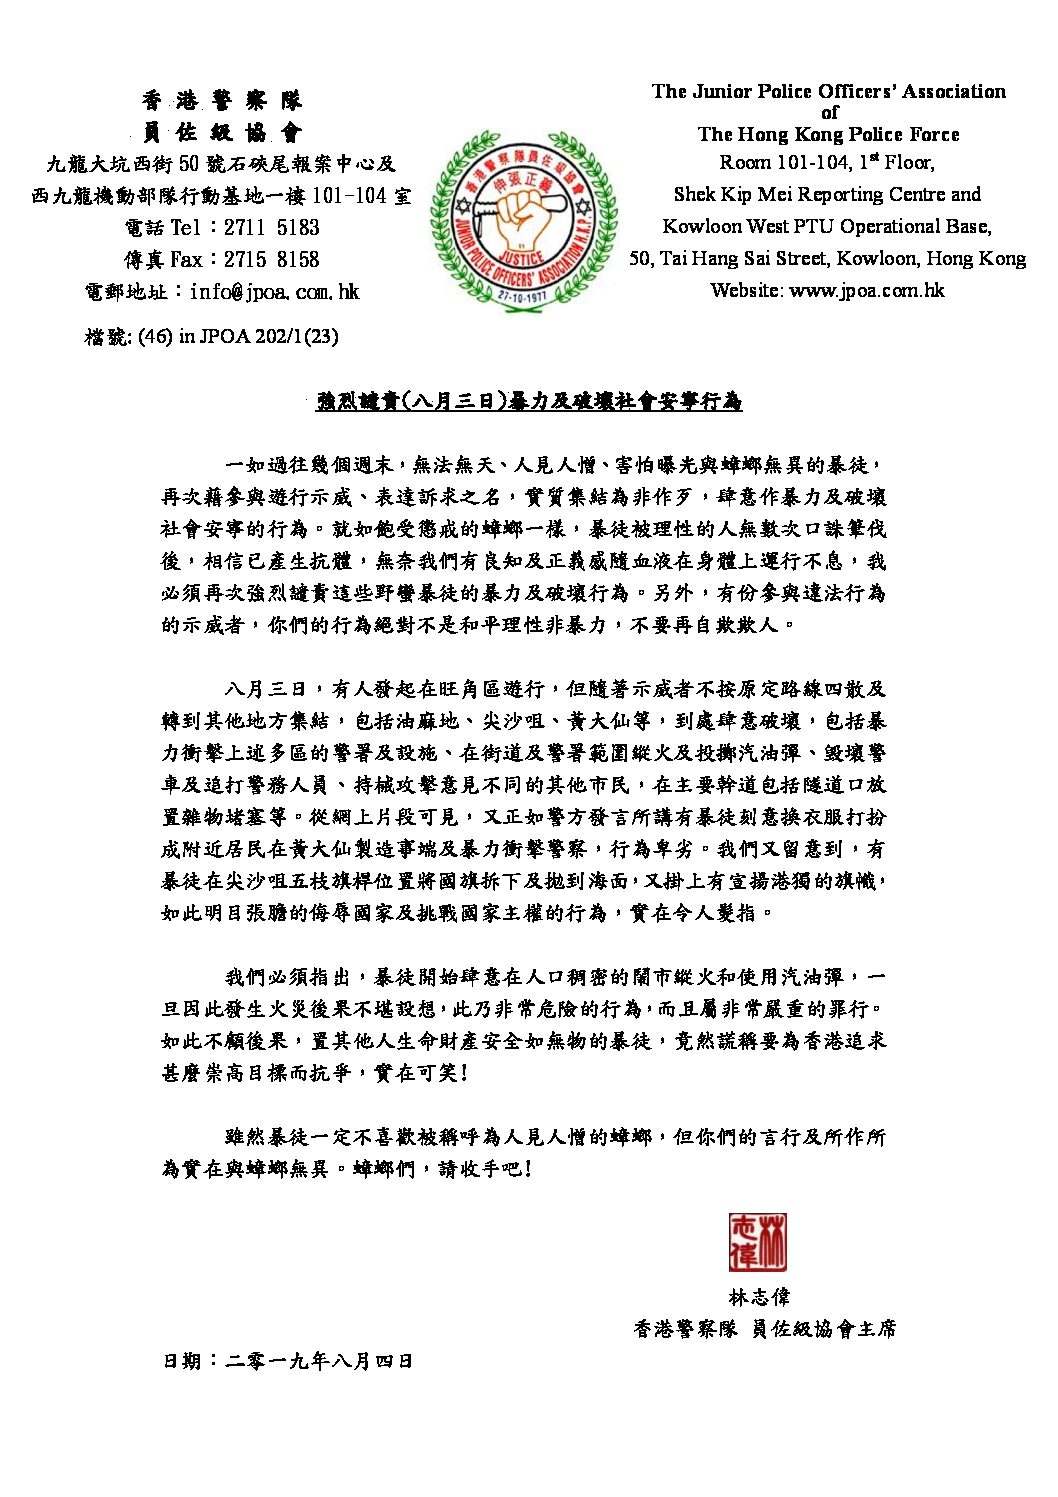 林志伟4日发布声明(图片来源：香港警察队员佐级协会网站)